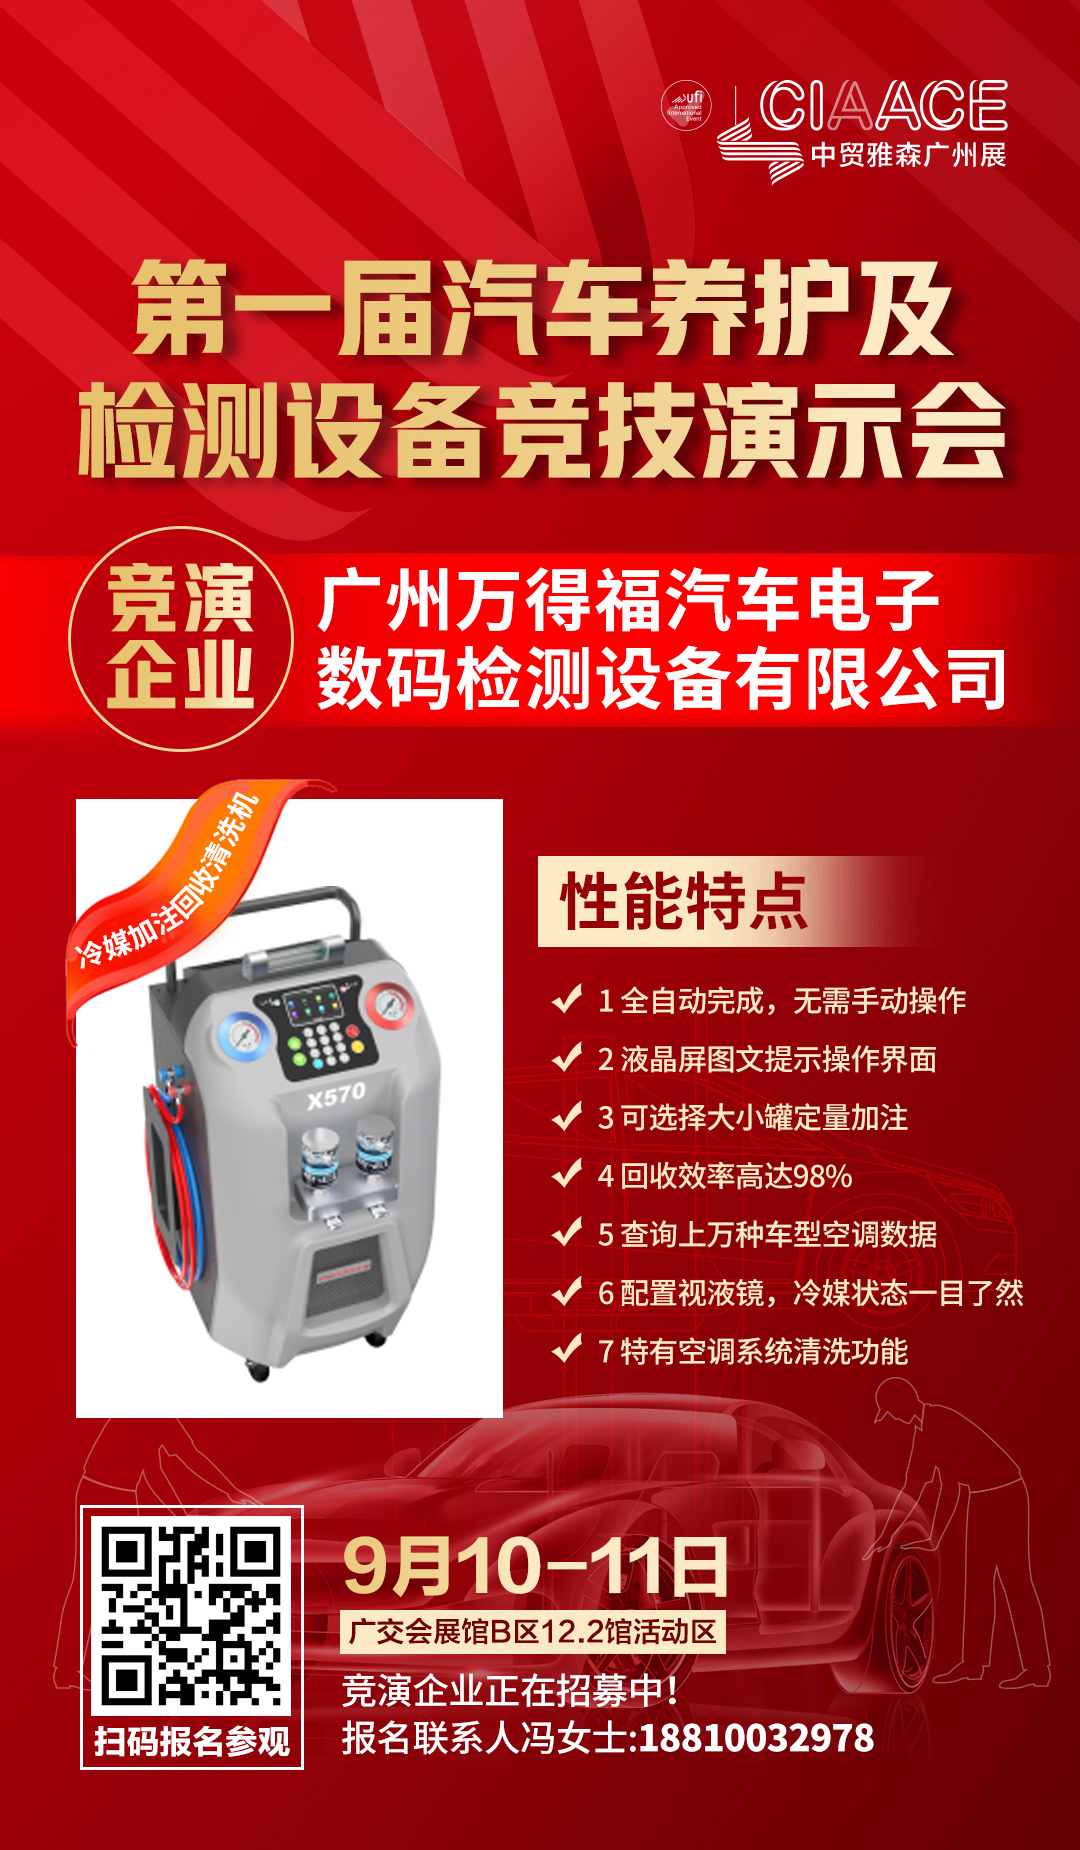 广州万得福汽车电子数码检测设备有限公司